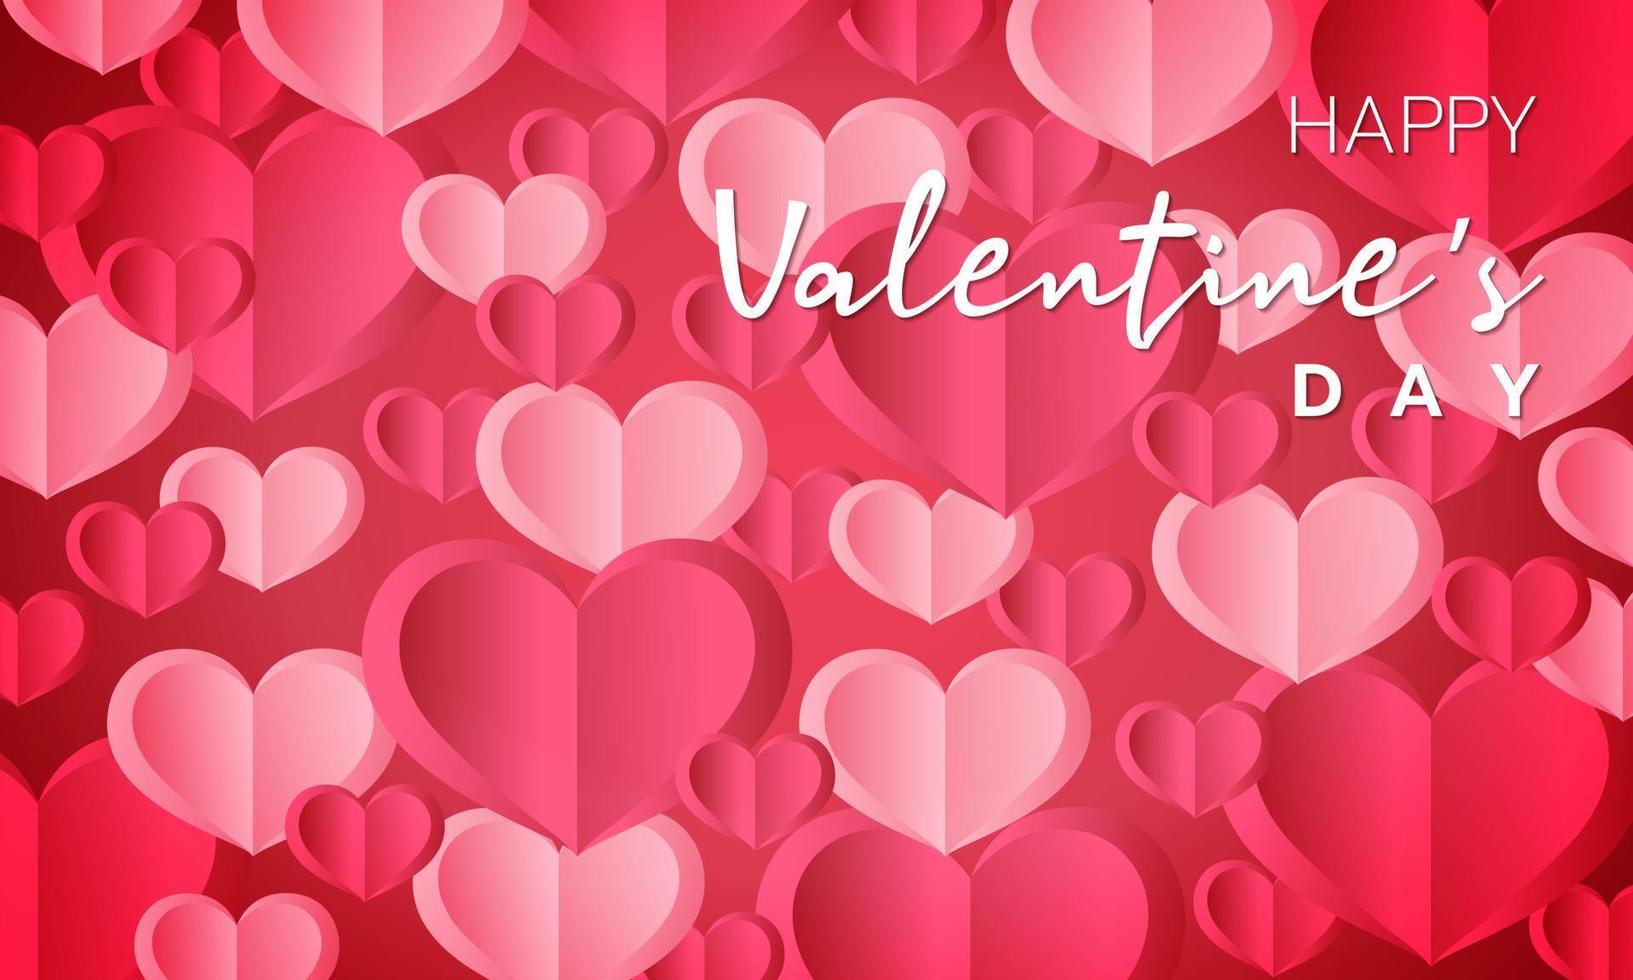 Những lá bài Valentine không chỉ truyền đạt tình yêu mà còn đầy ý nghĩa. Chúng tôi nổi bật với lá bài Valentine hạnh phúc, được trang trí bằng các hình trái tim giấy hồng đậm và hồng nhạt cực dễ thương. Sẽ rất tuyệt vời khi bạn sử dụng chúng vào mùa Valentine để tải năng lượng hạnh phúc cho người ấy.